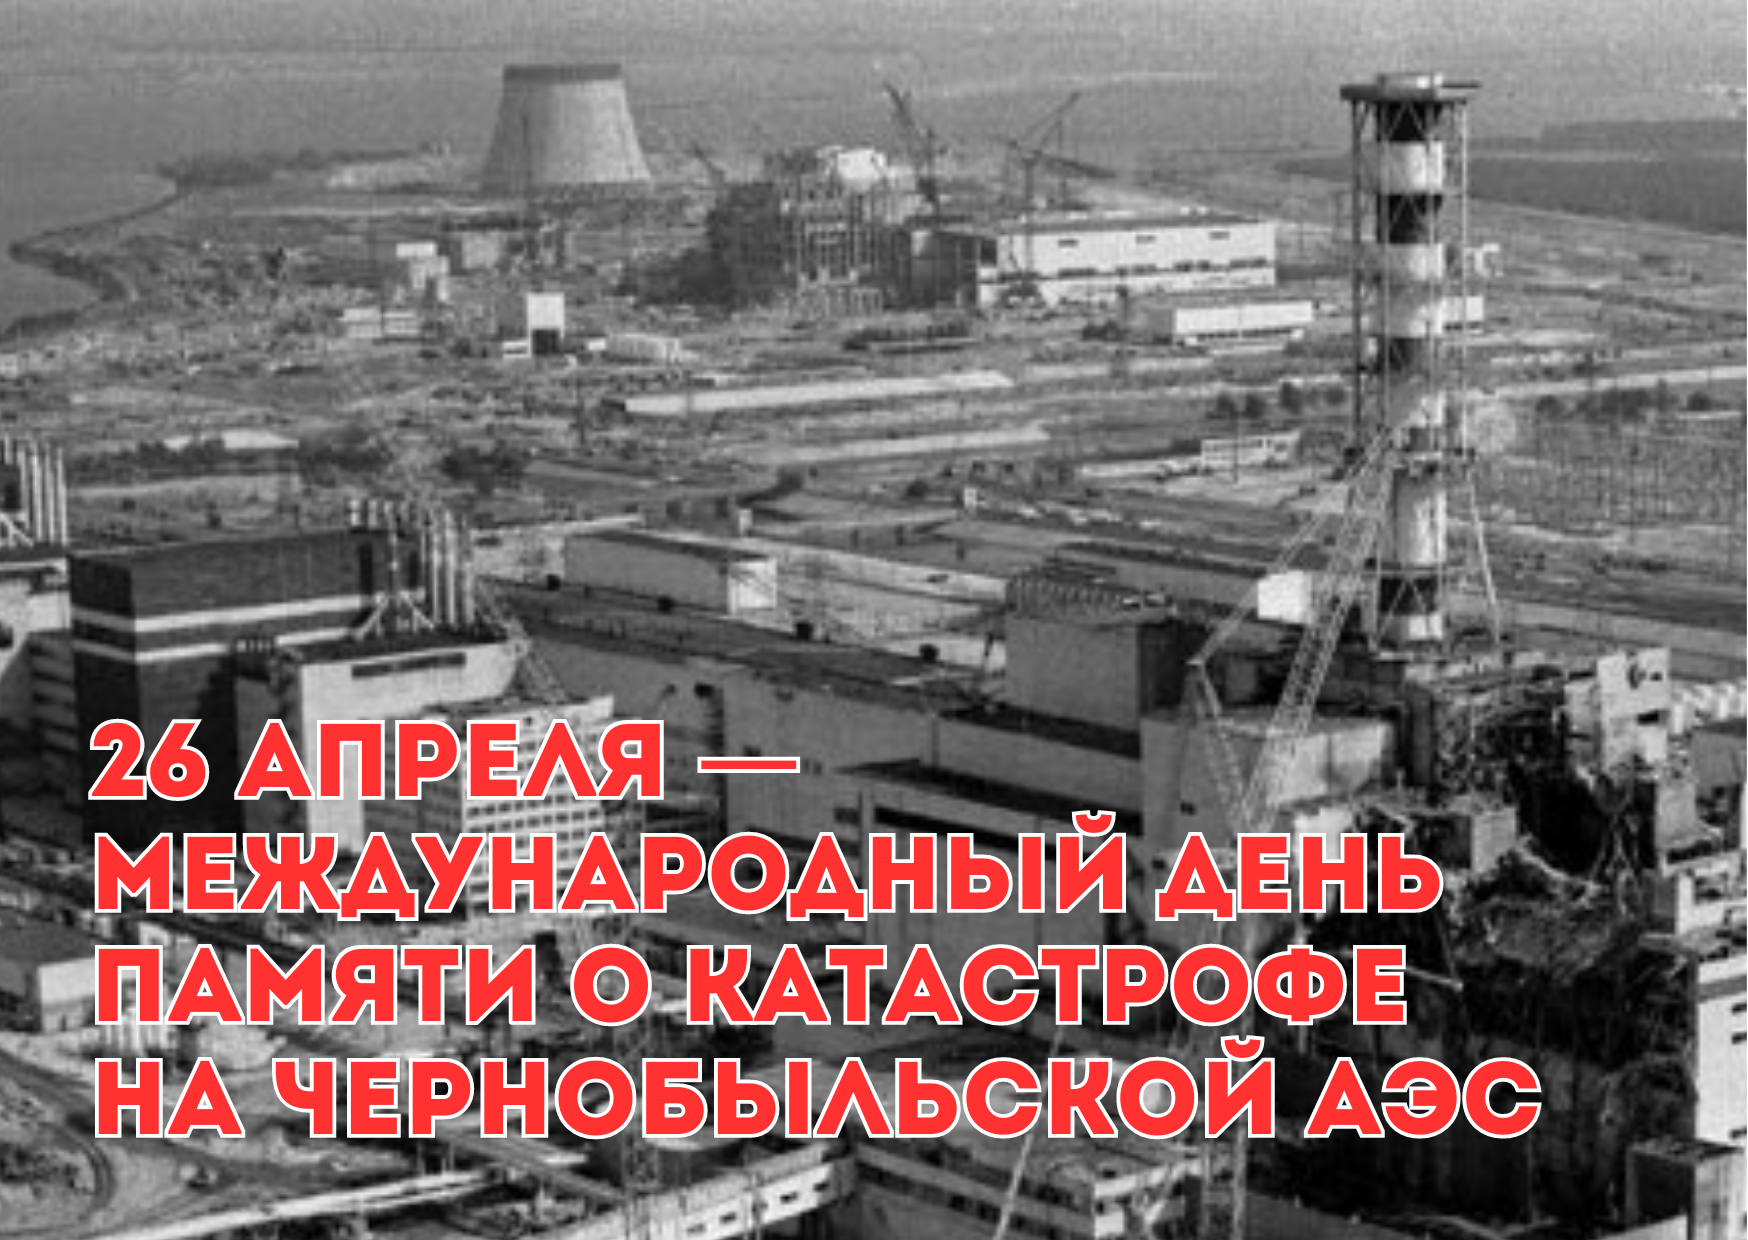 День памяти чернобыльской аэс. Чернобыль 26 апреля 1986. Чернобыльская катастрофа 26 апреля 1986 года. 26 Апреля Чернобыльская АЭС. Аварария на ЧАЭС.